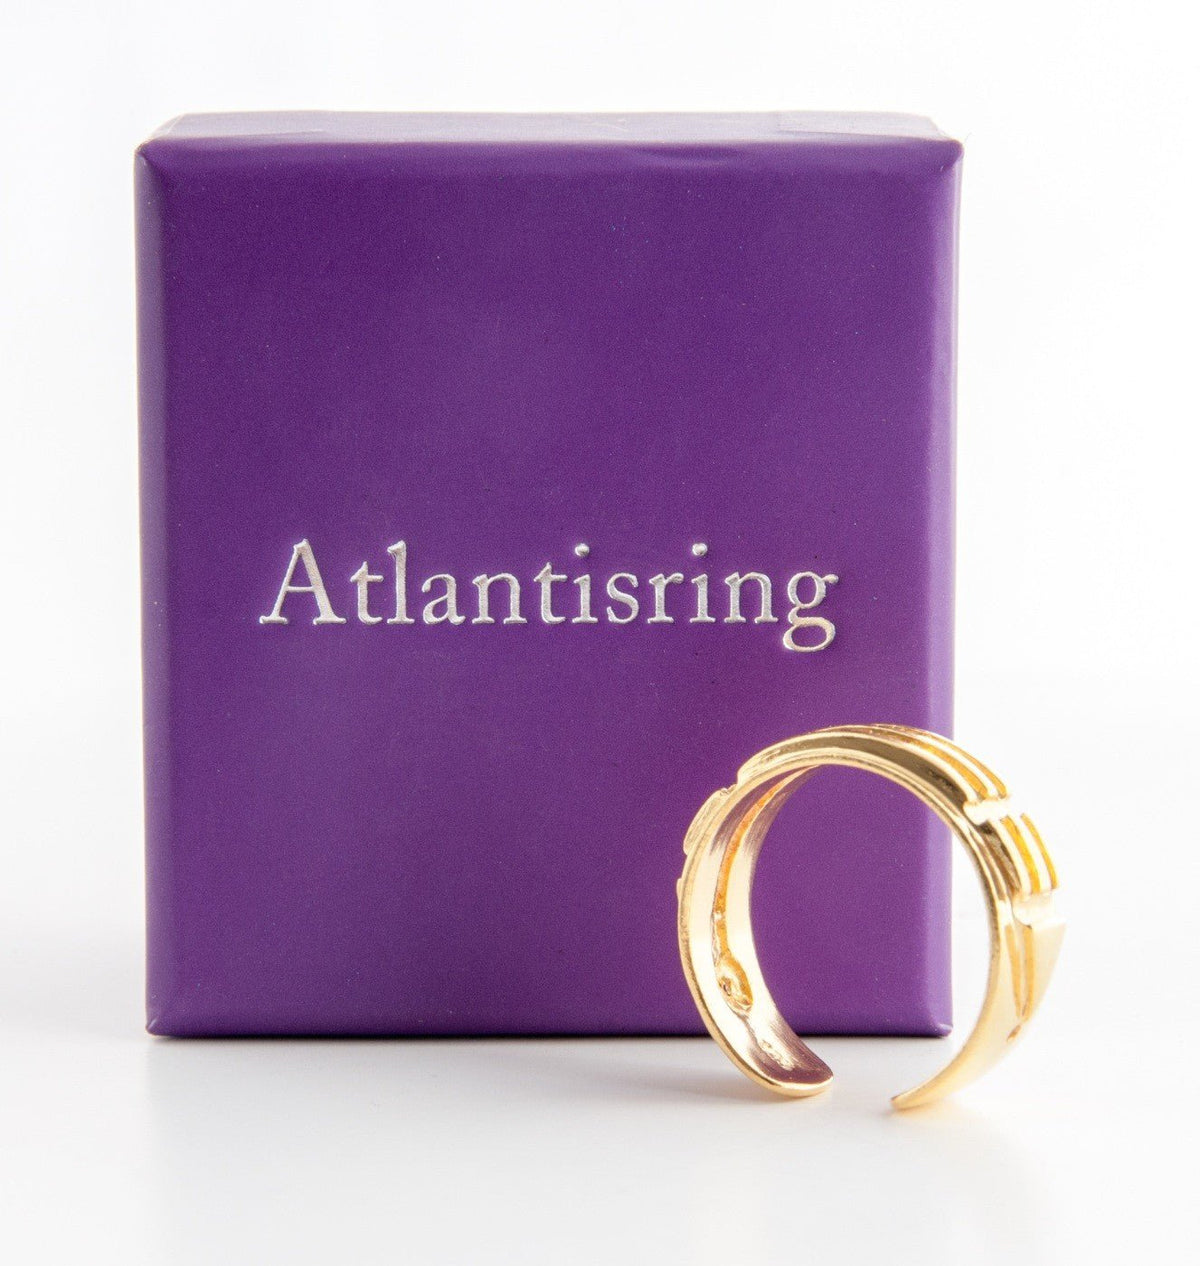 Atlantisring (Damengröße) vergoldet - Das Raeucherwerk